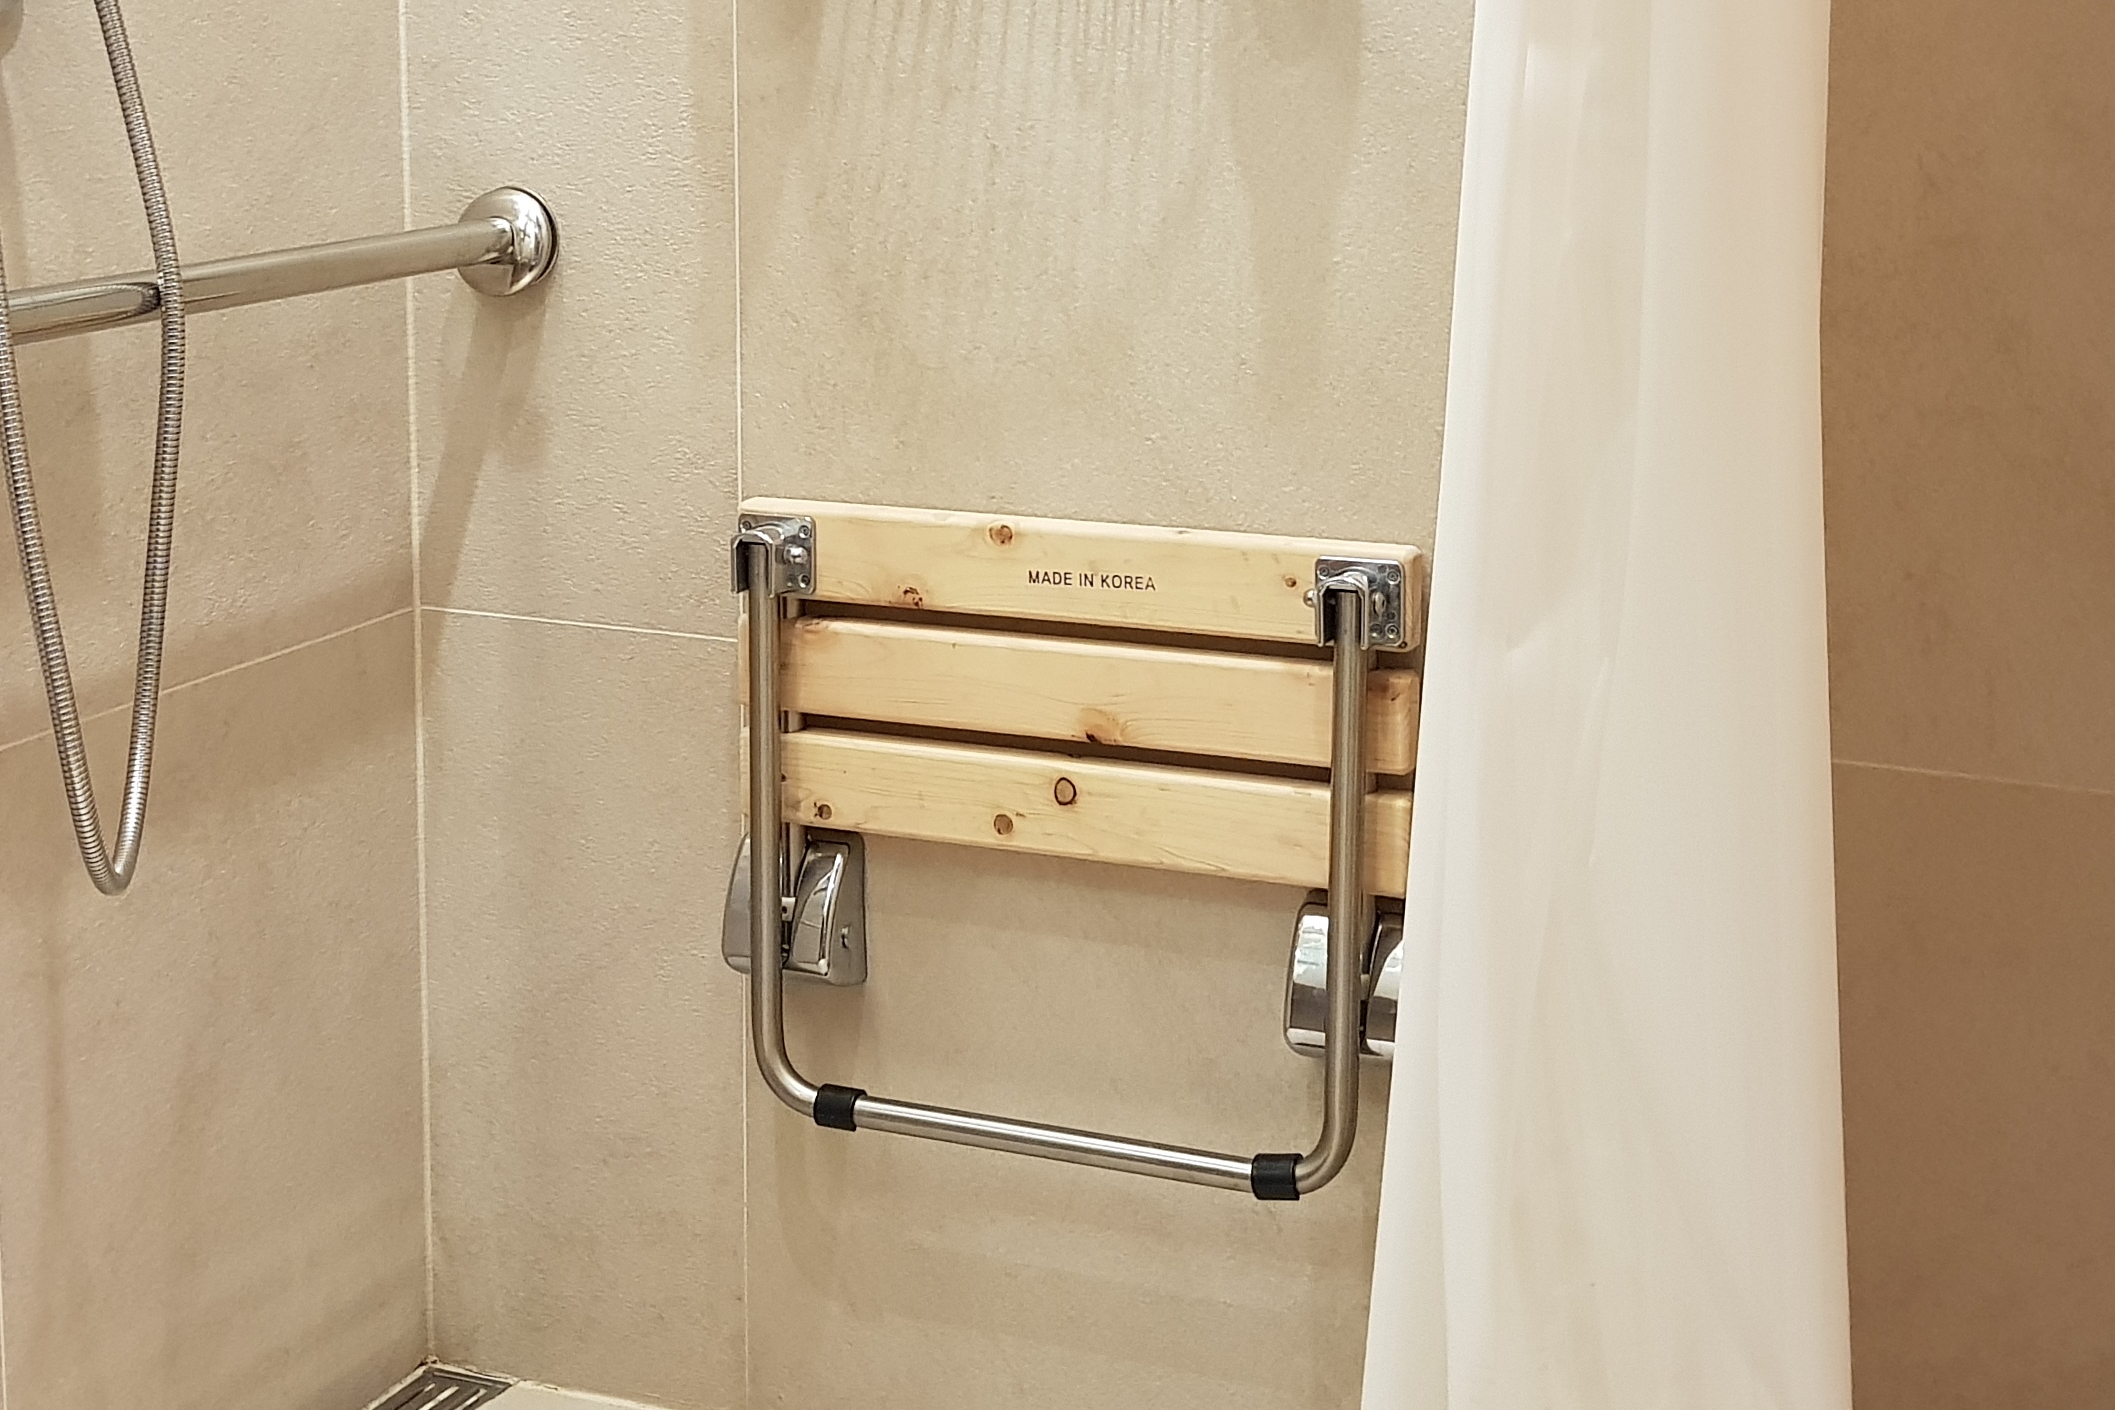 샤워의자0 : 알로프트 서울 명동 화장실 내부에 설치되어있는 샤워의자